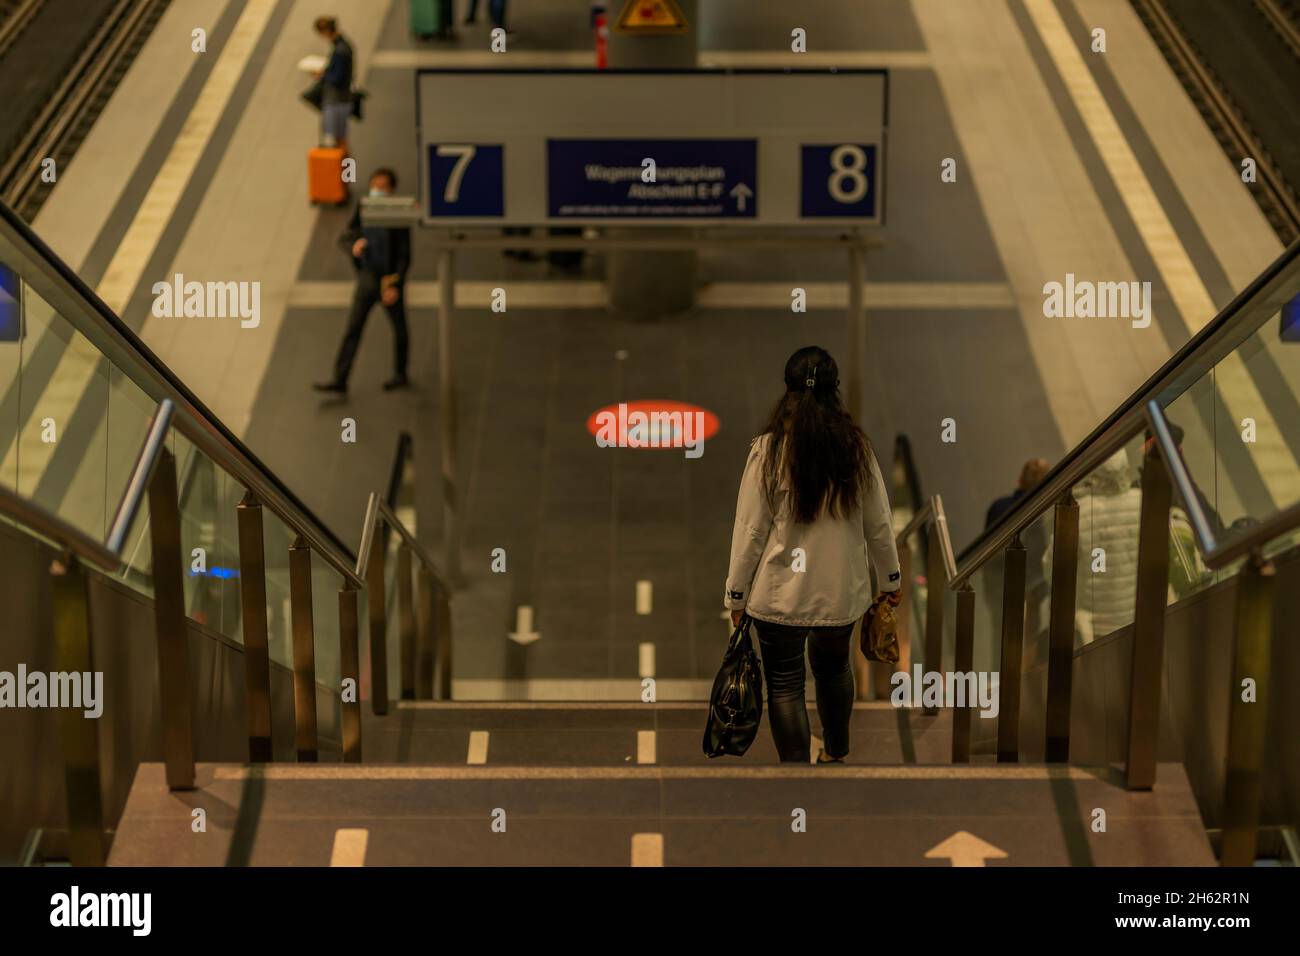 berlin,allemagne,gare centrale,la femme descend les escaliers, faible profondeur de champ, bokeh mou Banque D'Images